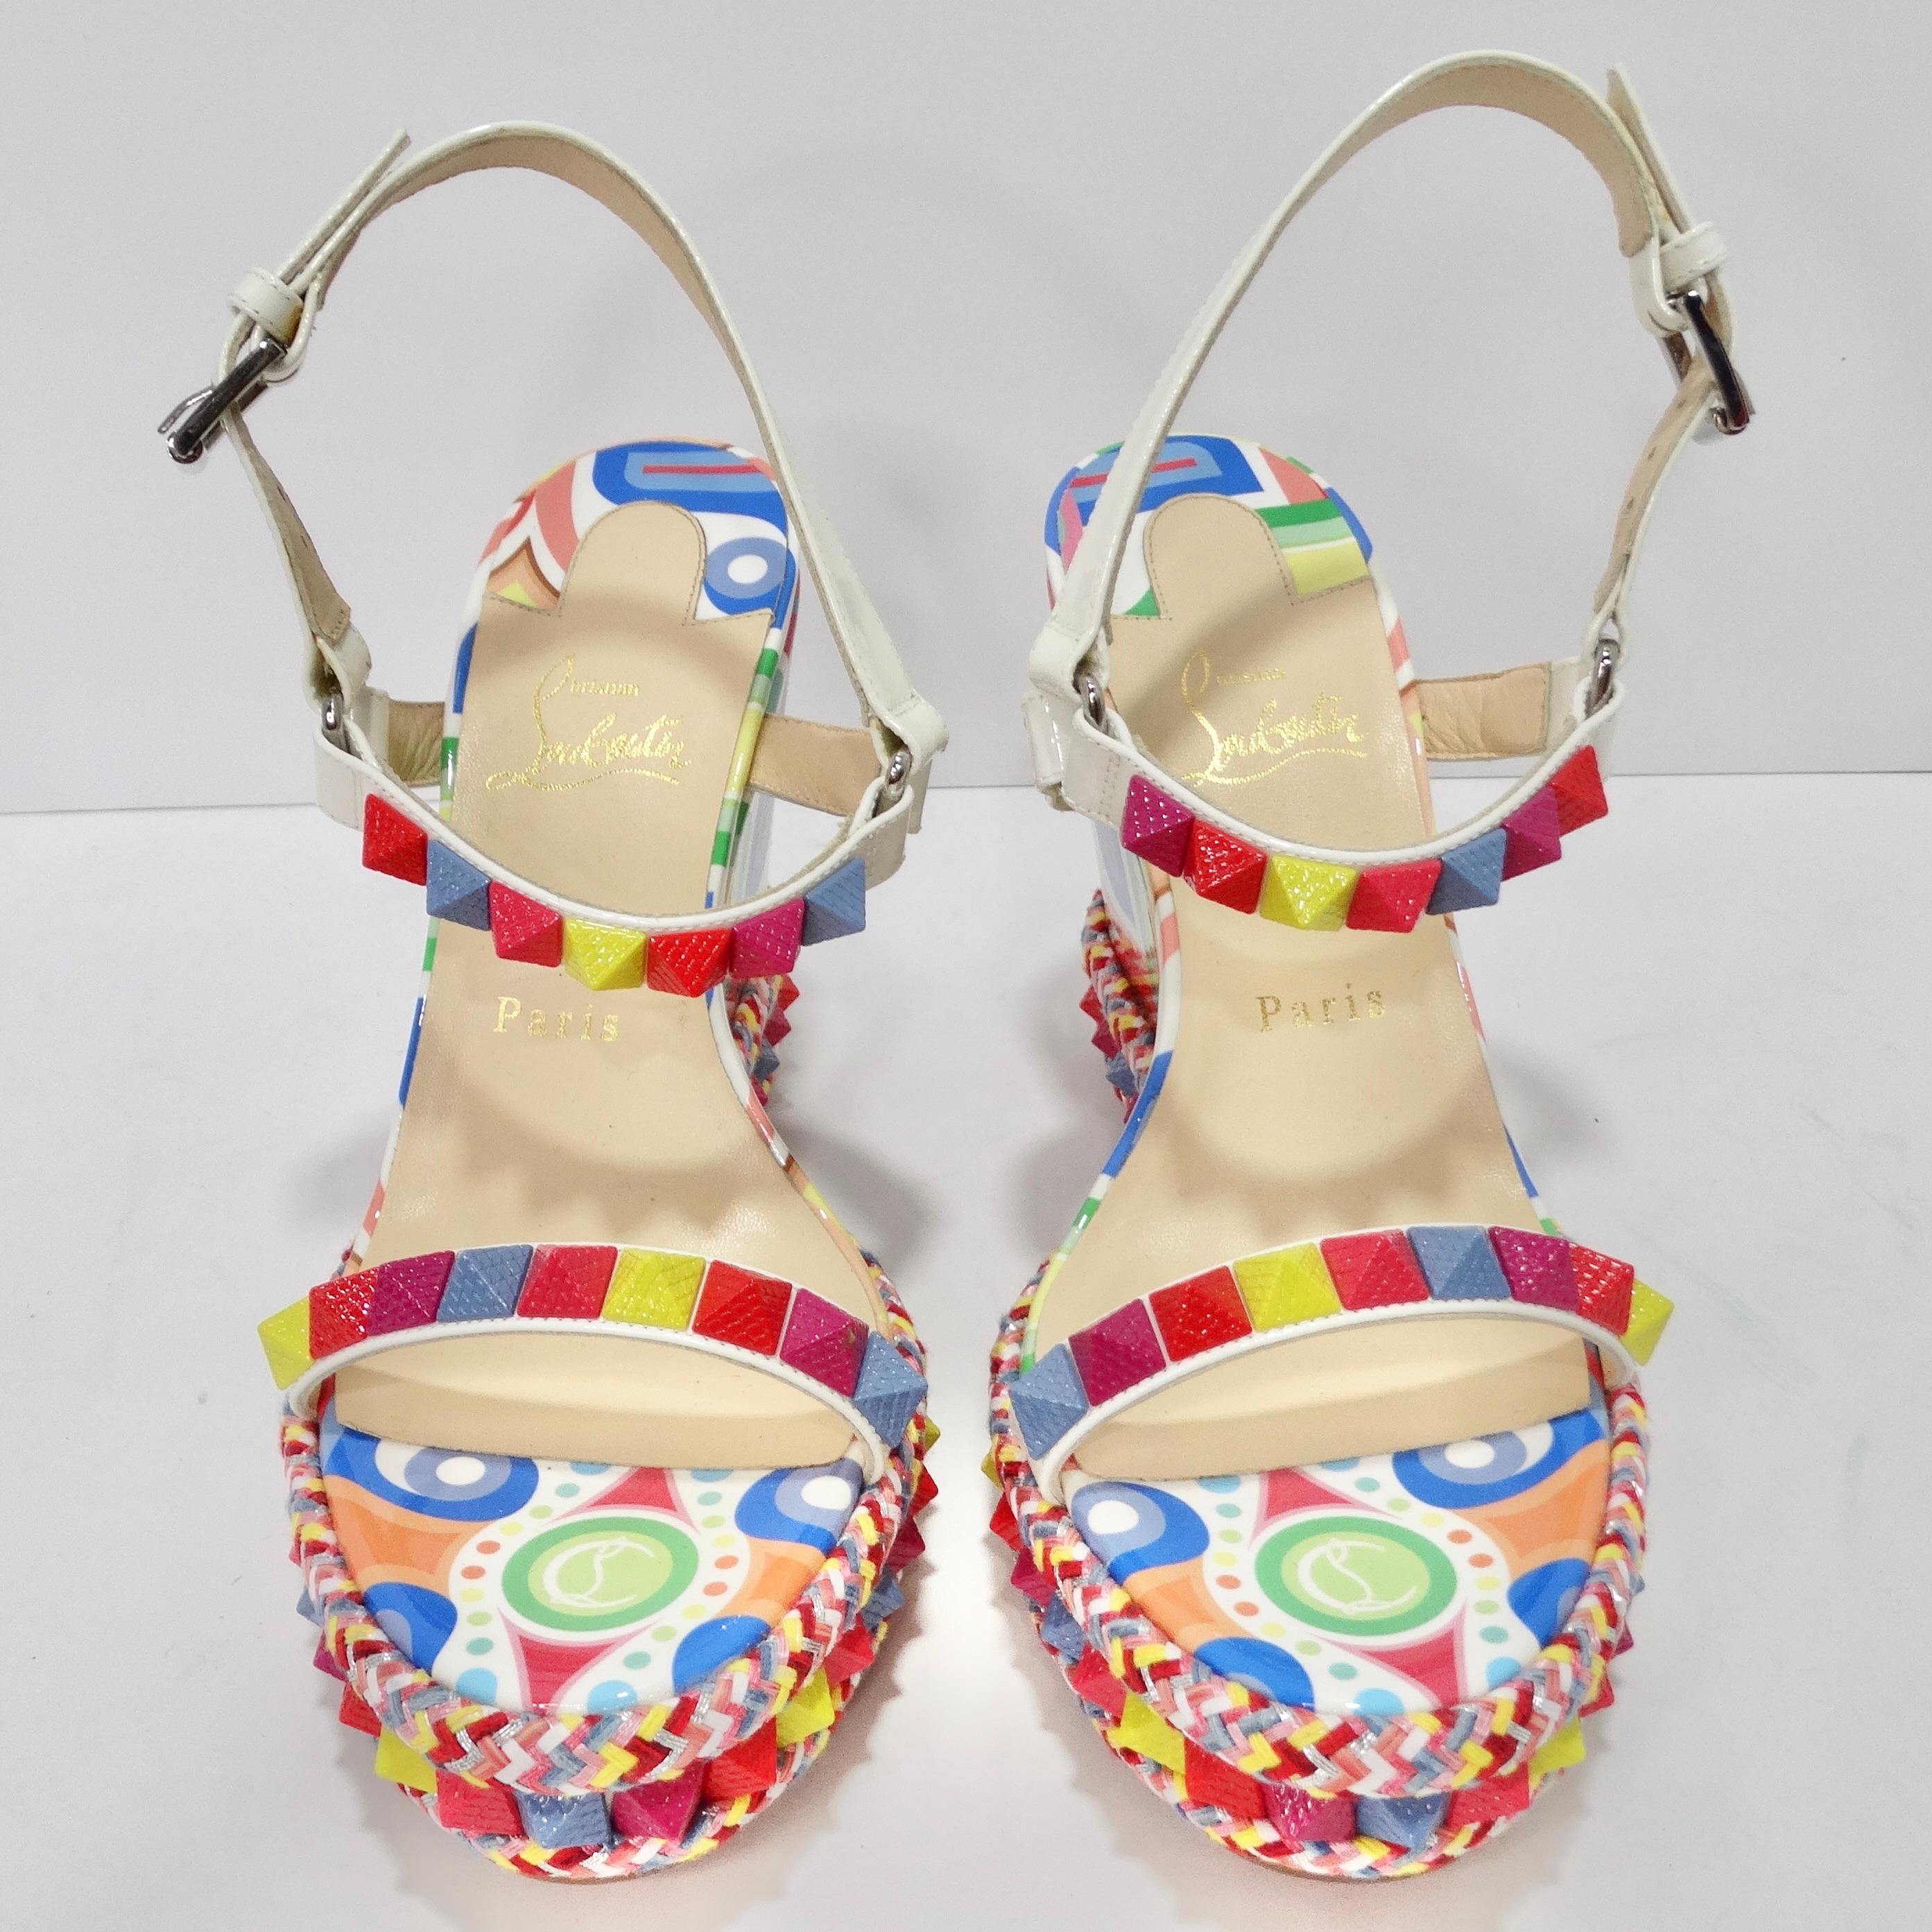 Voici les semelles compensées à clous imprimés multicolores Christian Louboutin - un kaléidoscope de style, de créativité et de charme ludique. Ces chaussures compensées sont l'exemple même d'une mode accrocheuse et vibrante, parfaite pour celles